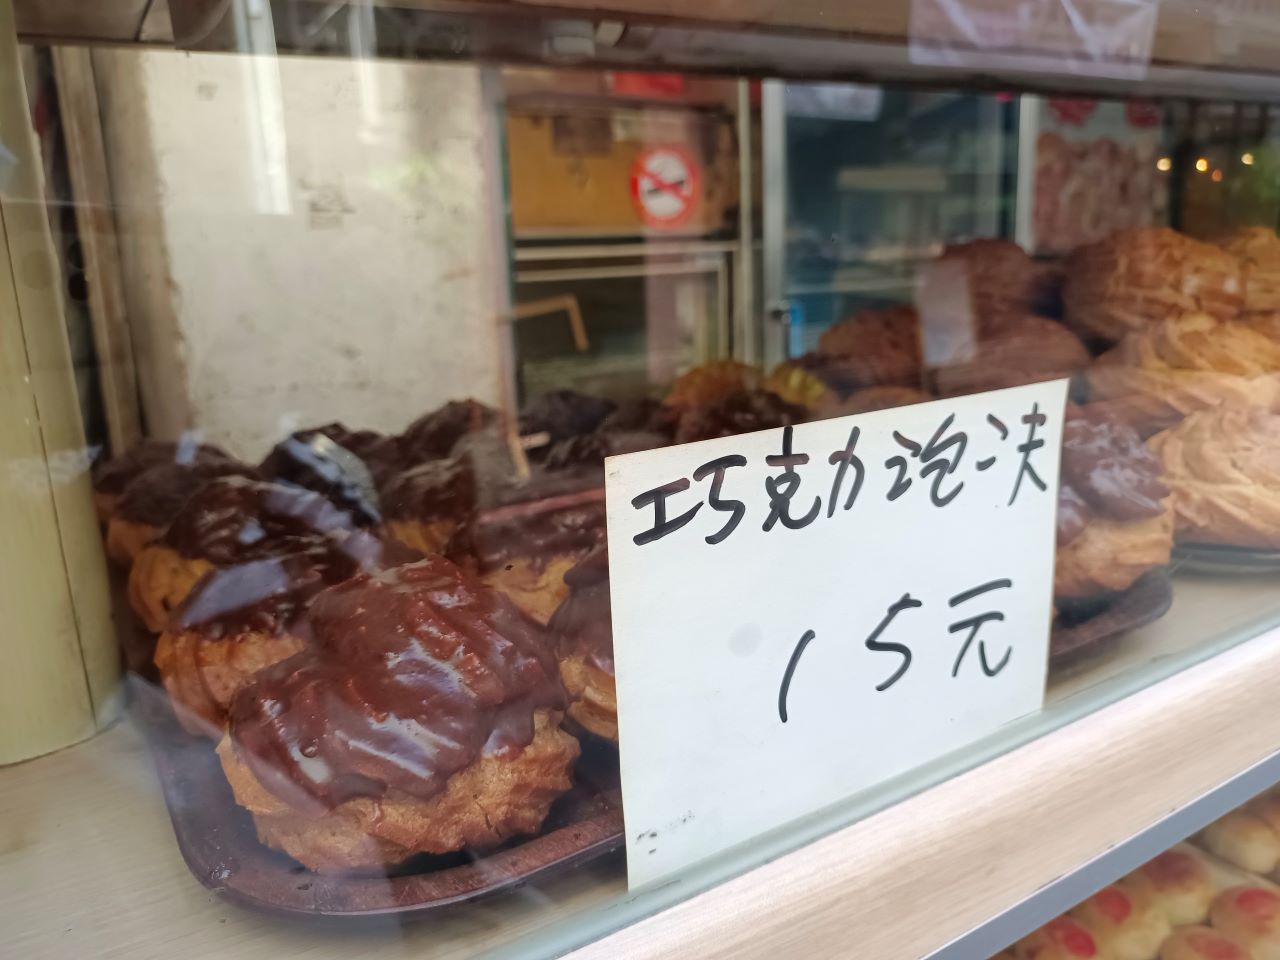 板橋下午茶點心-在大台北地區還有5元的鳳梨酥10元的蛋塔、牛舌餅，若是想來試一下嘗鮮請勿買多~ @Nancy將的生活筆計本